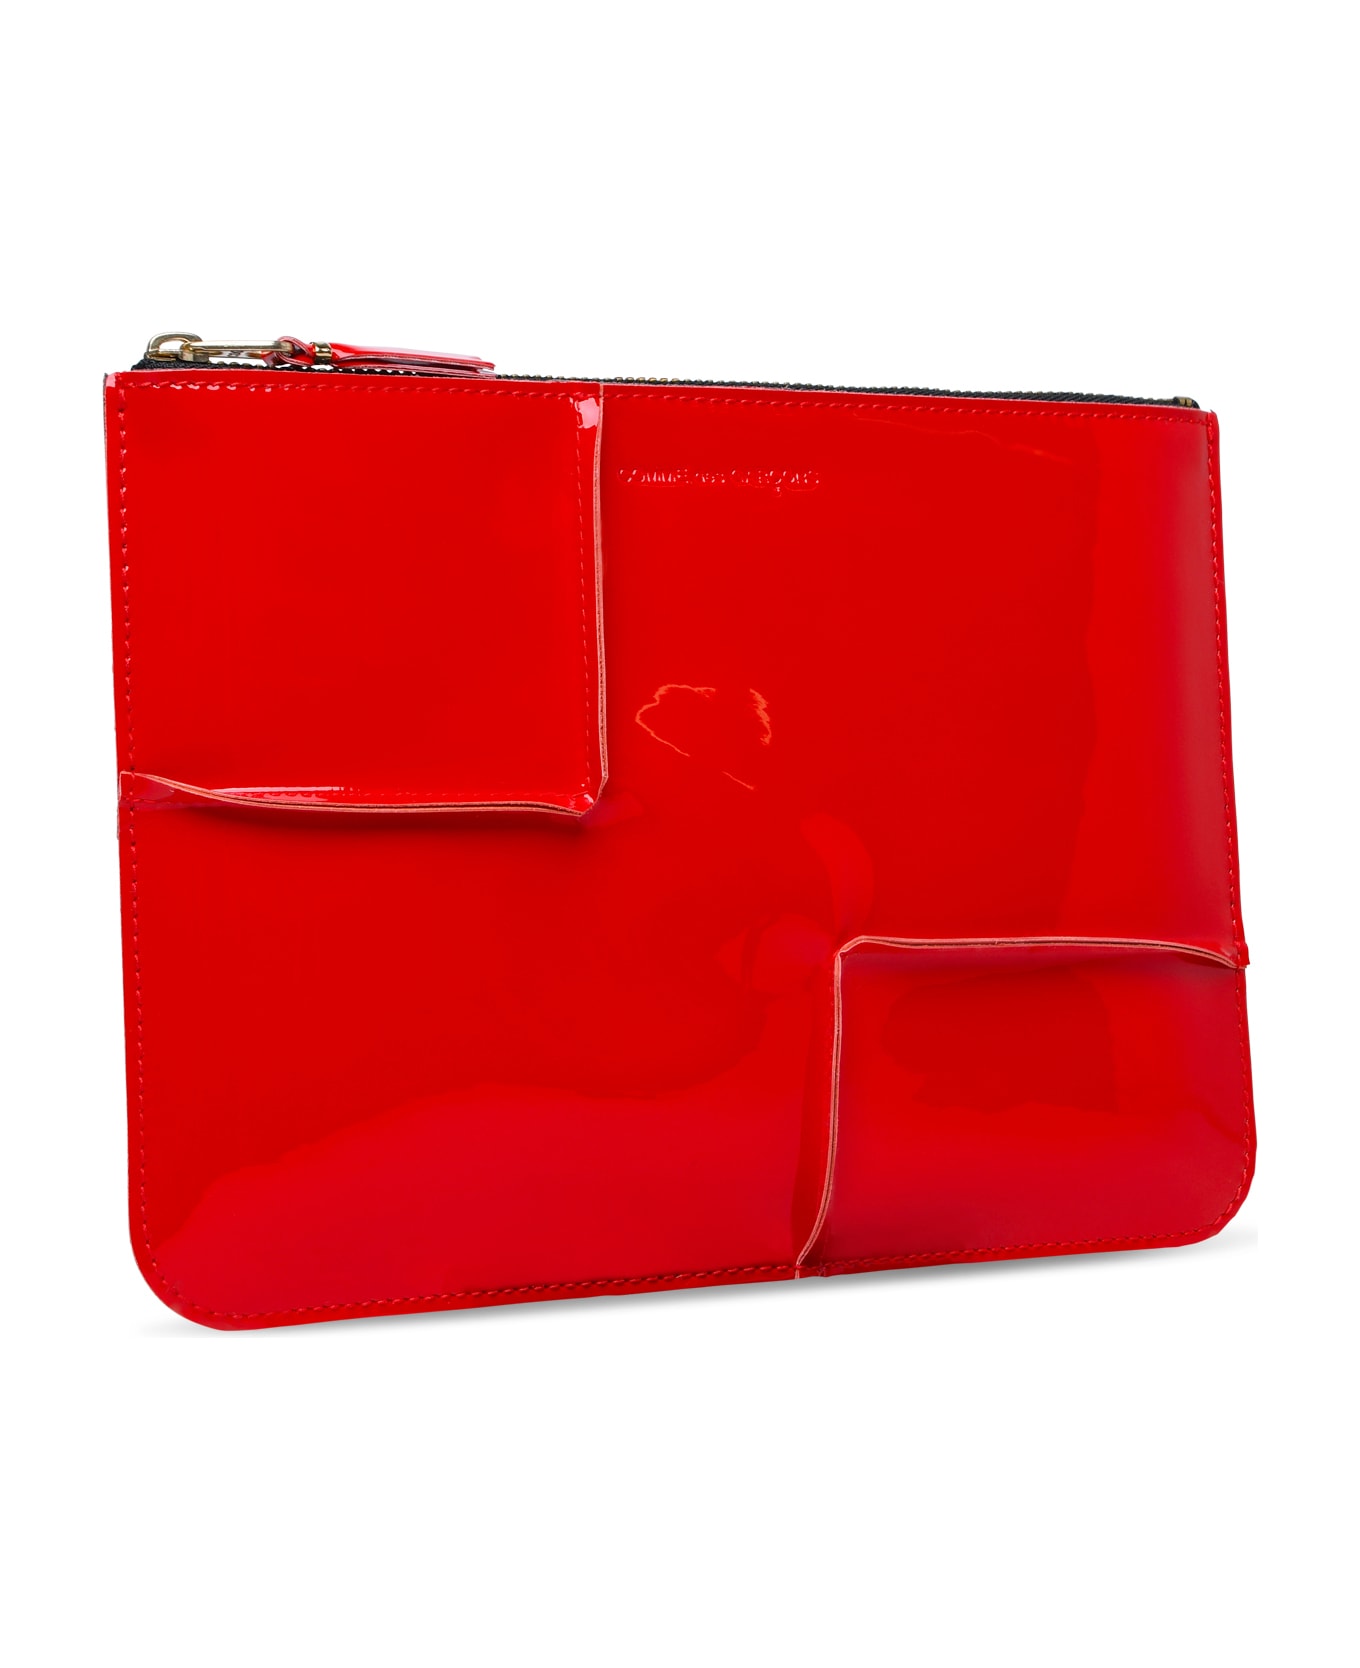 Comme des Garçons Wallet 'medley' Red Leather Envelope - Red